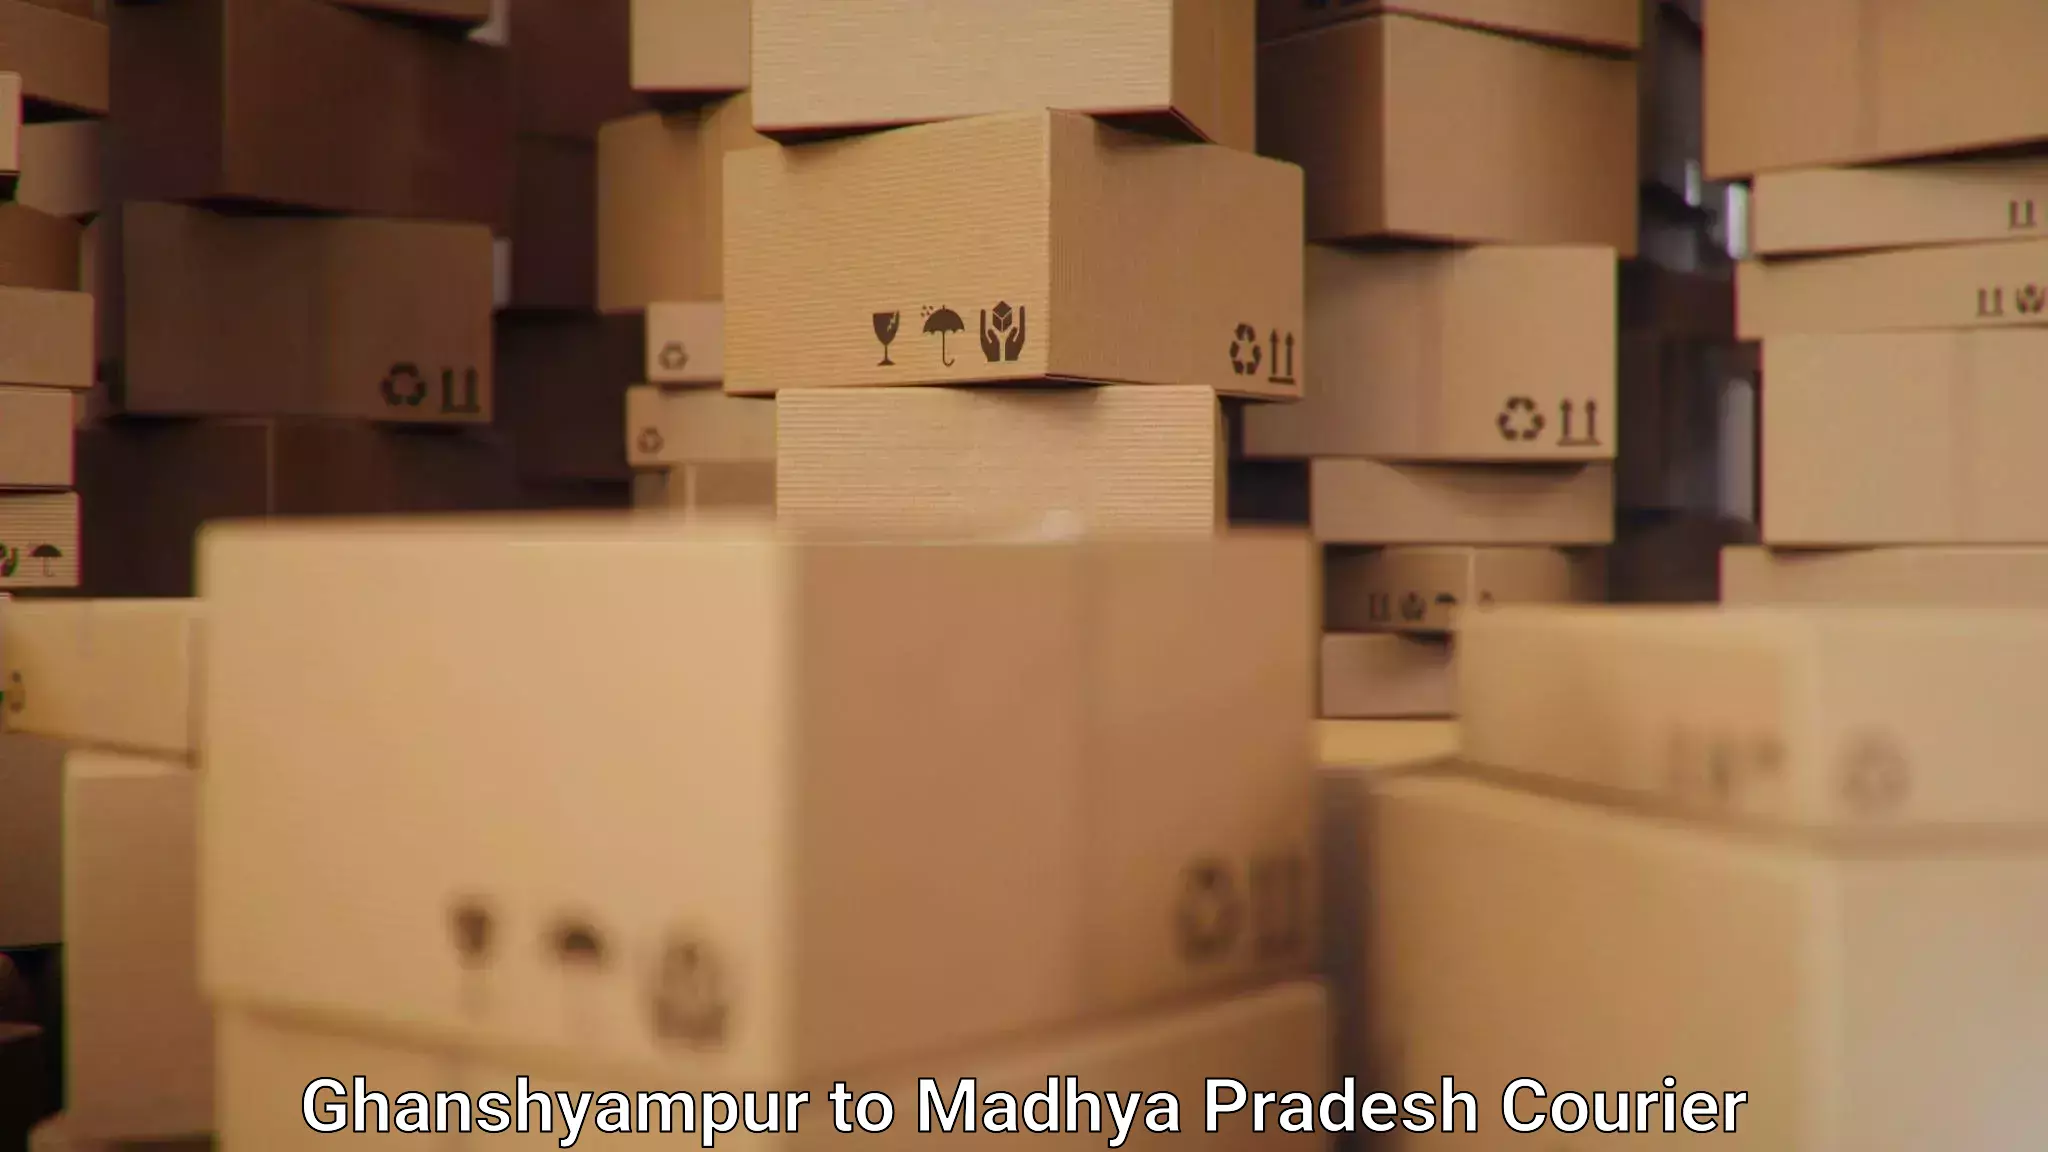 Modern courier technology Ghanshyampur to Jaisinghnagar